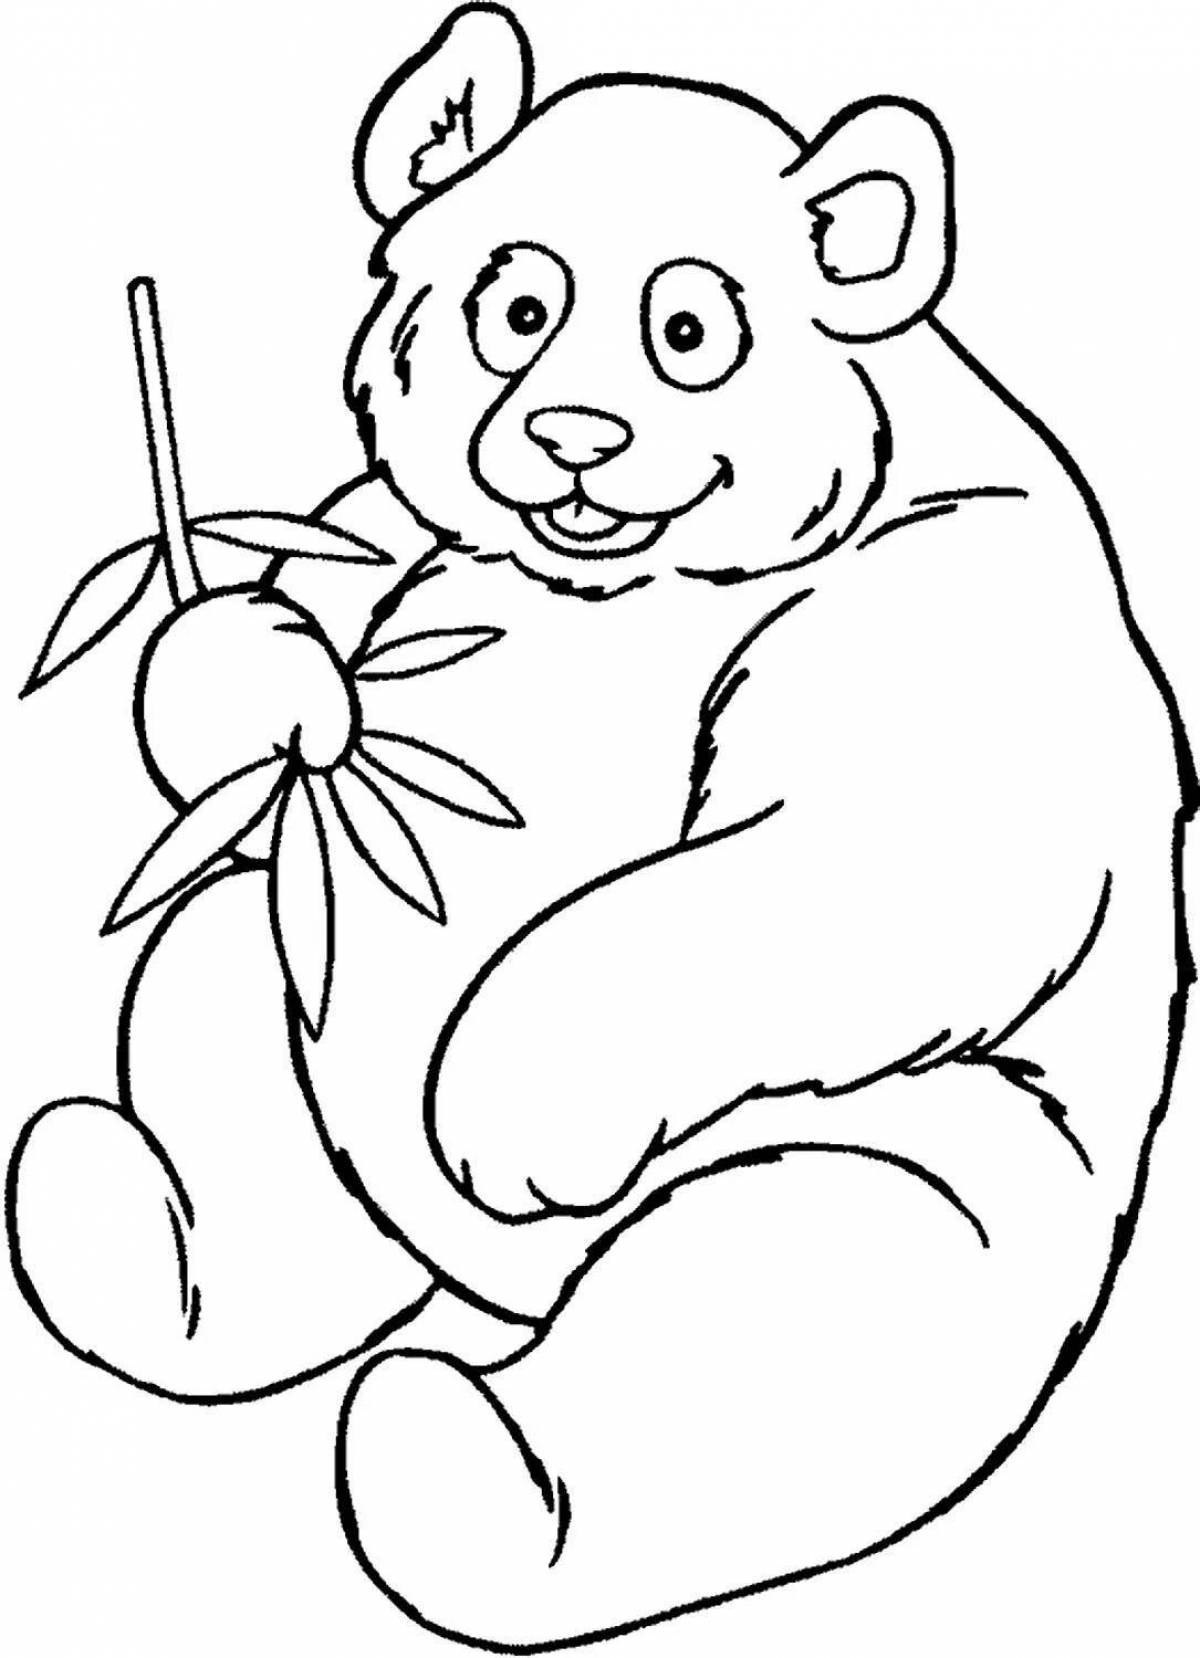 Magic coloring panda bear